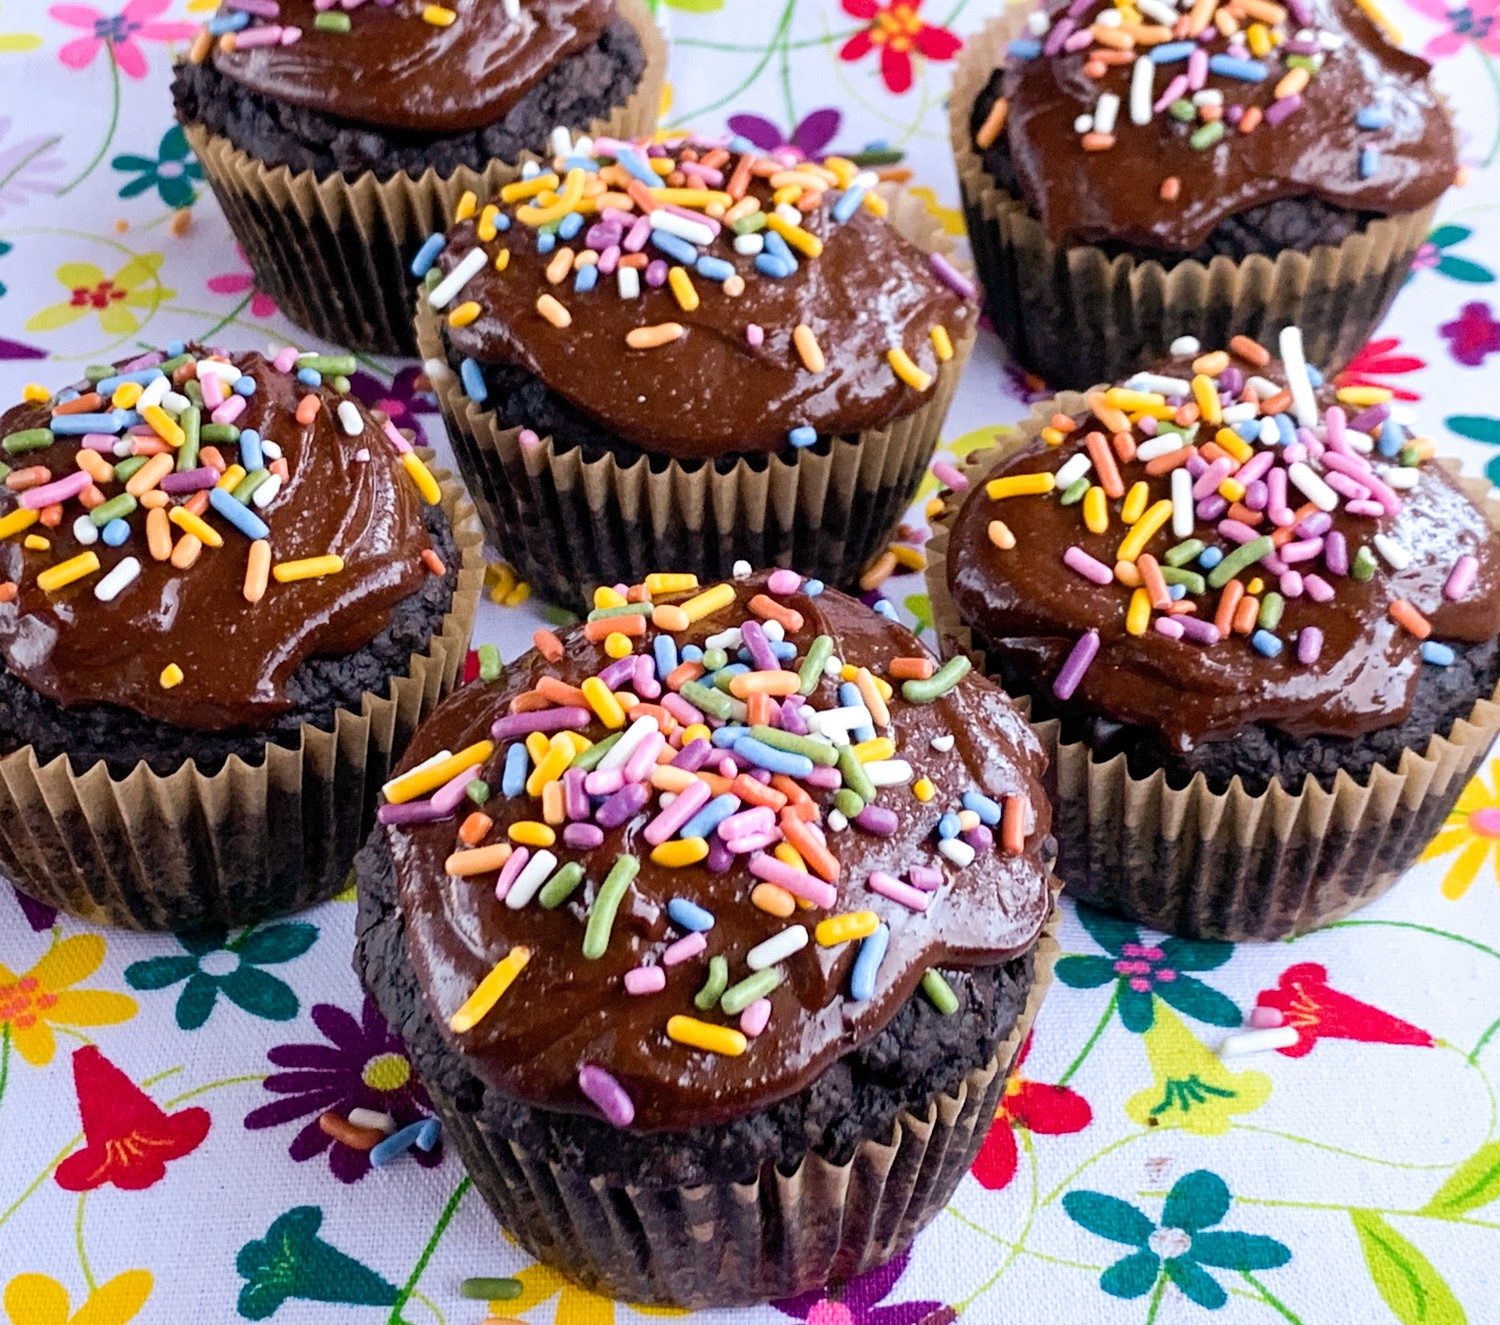 Comment faire un glaçage au chocolat pour cupcake - Recette par